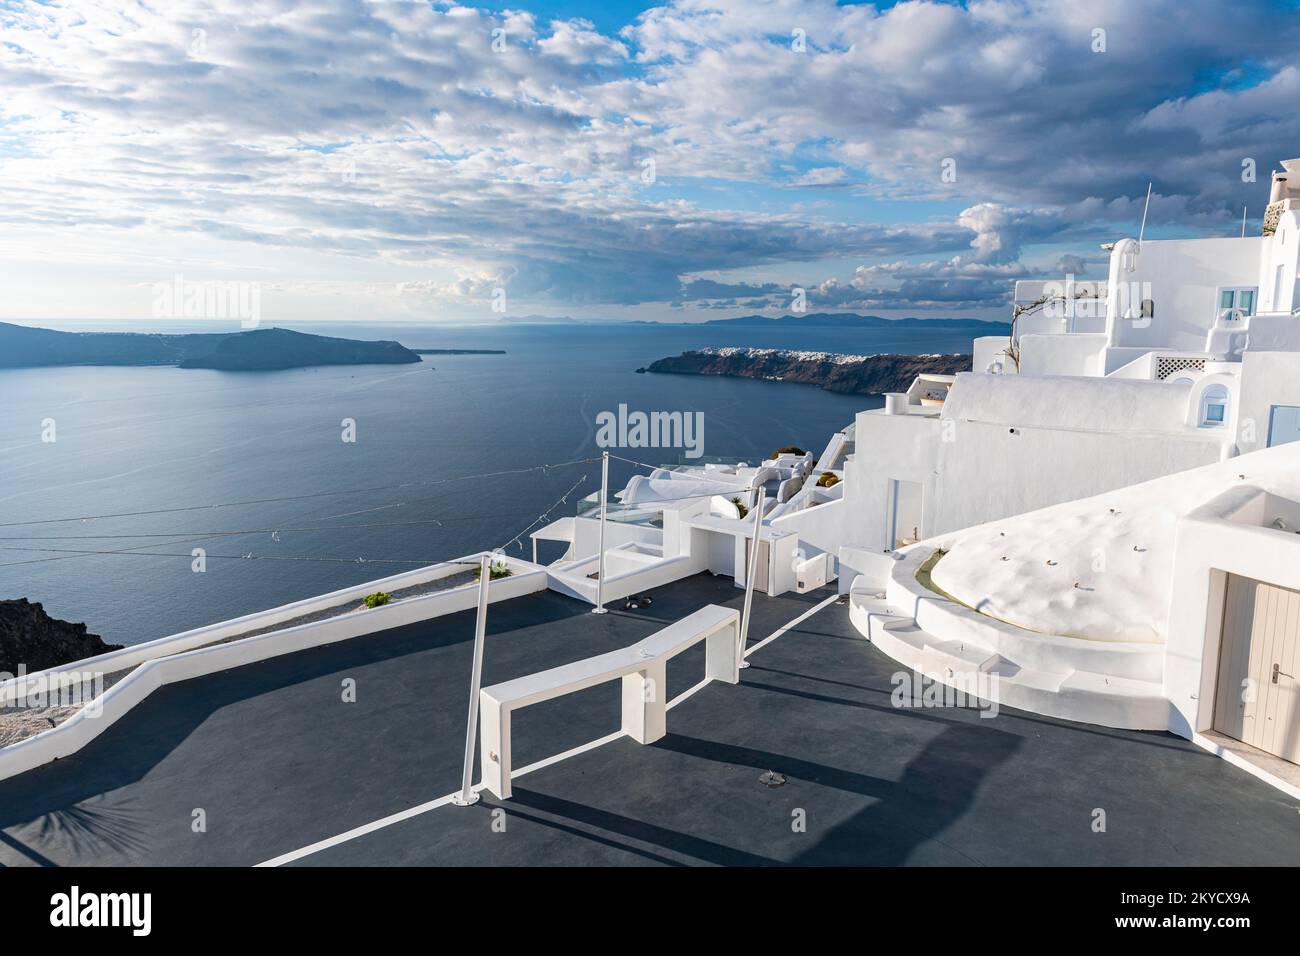 Maisons blanches de luxe à Fira, Santorini, Grèce Banque D'Images